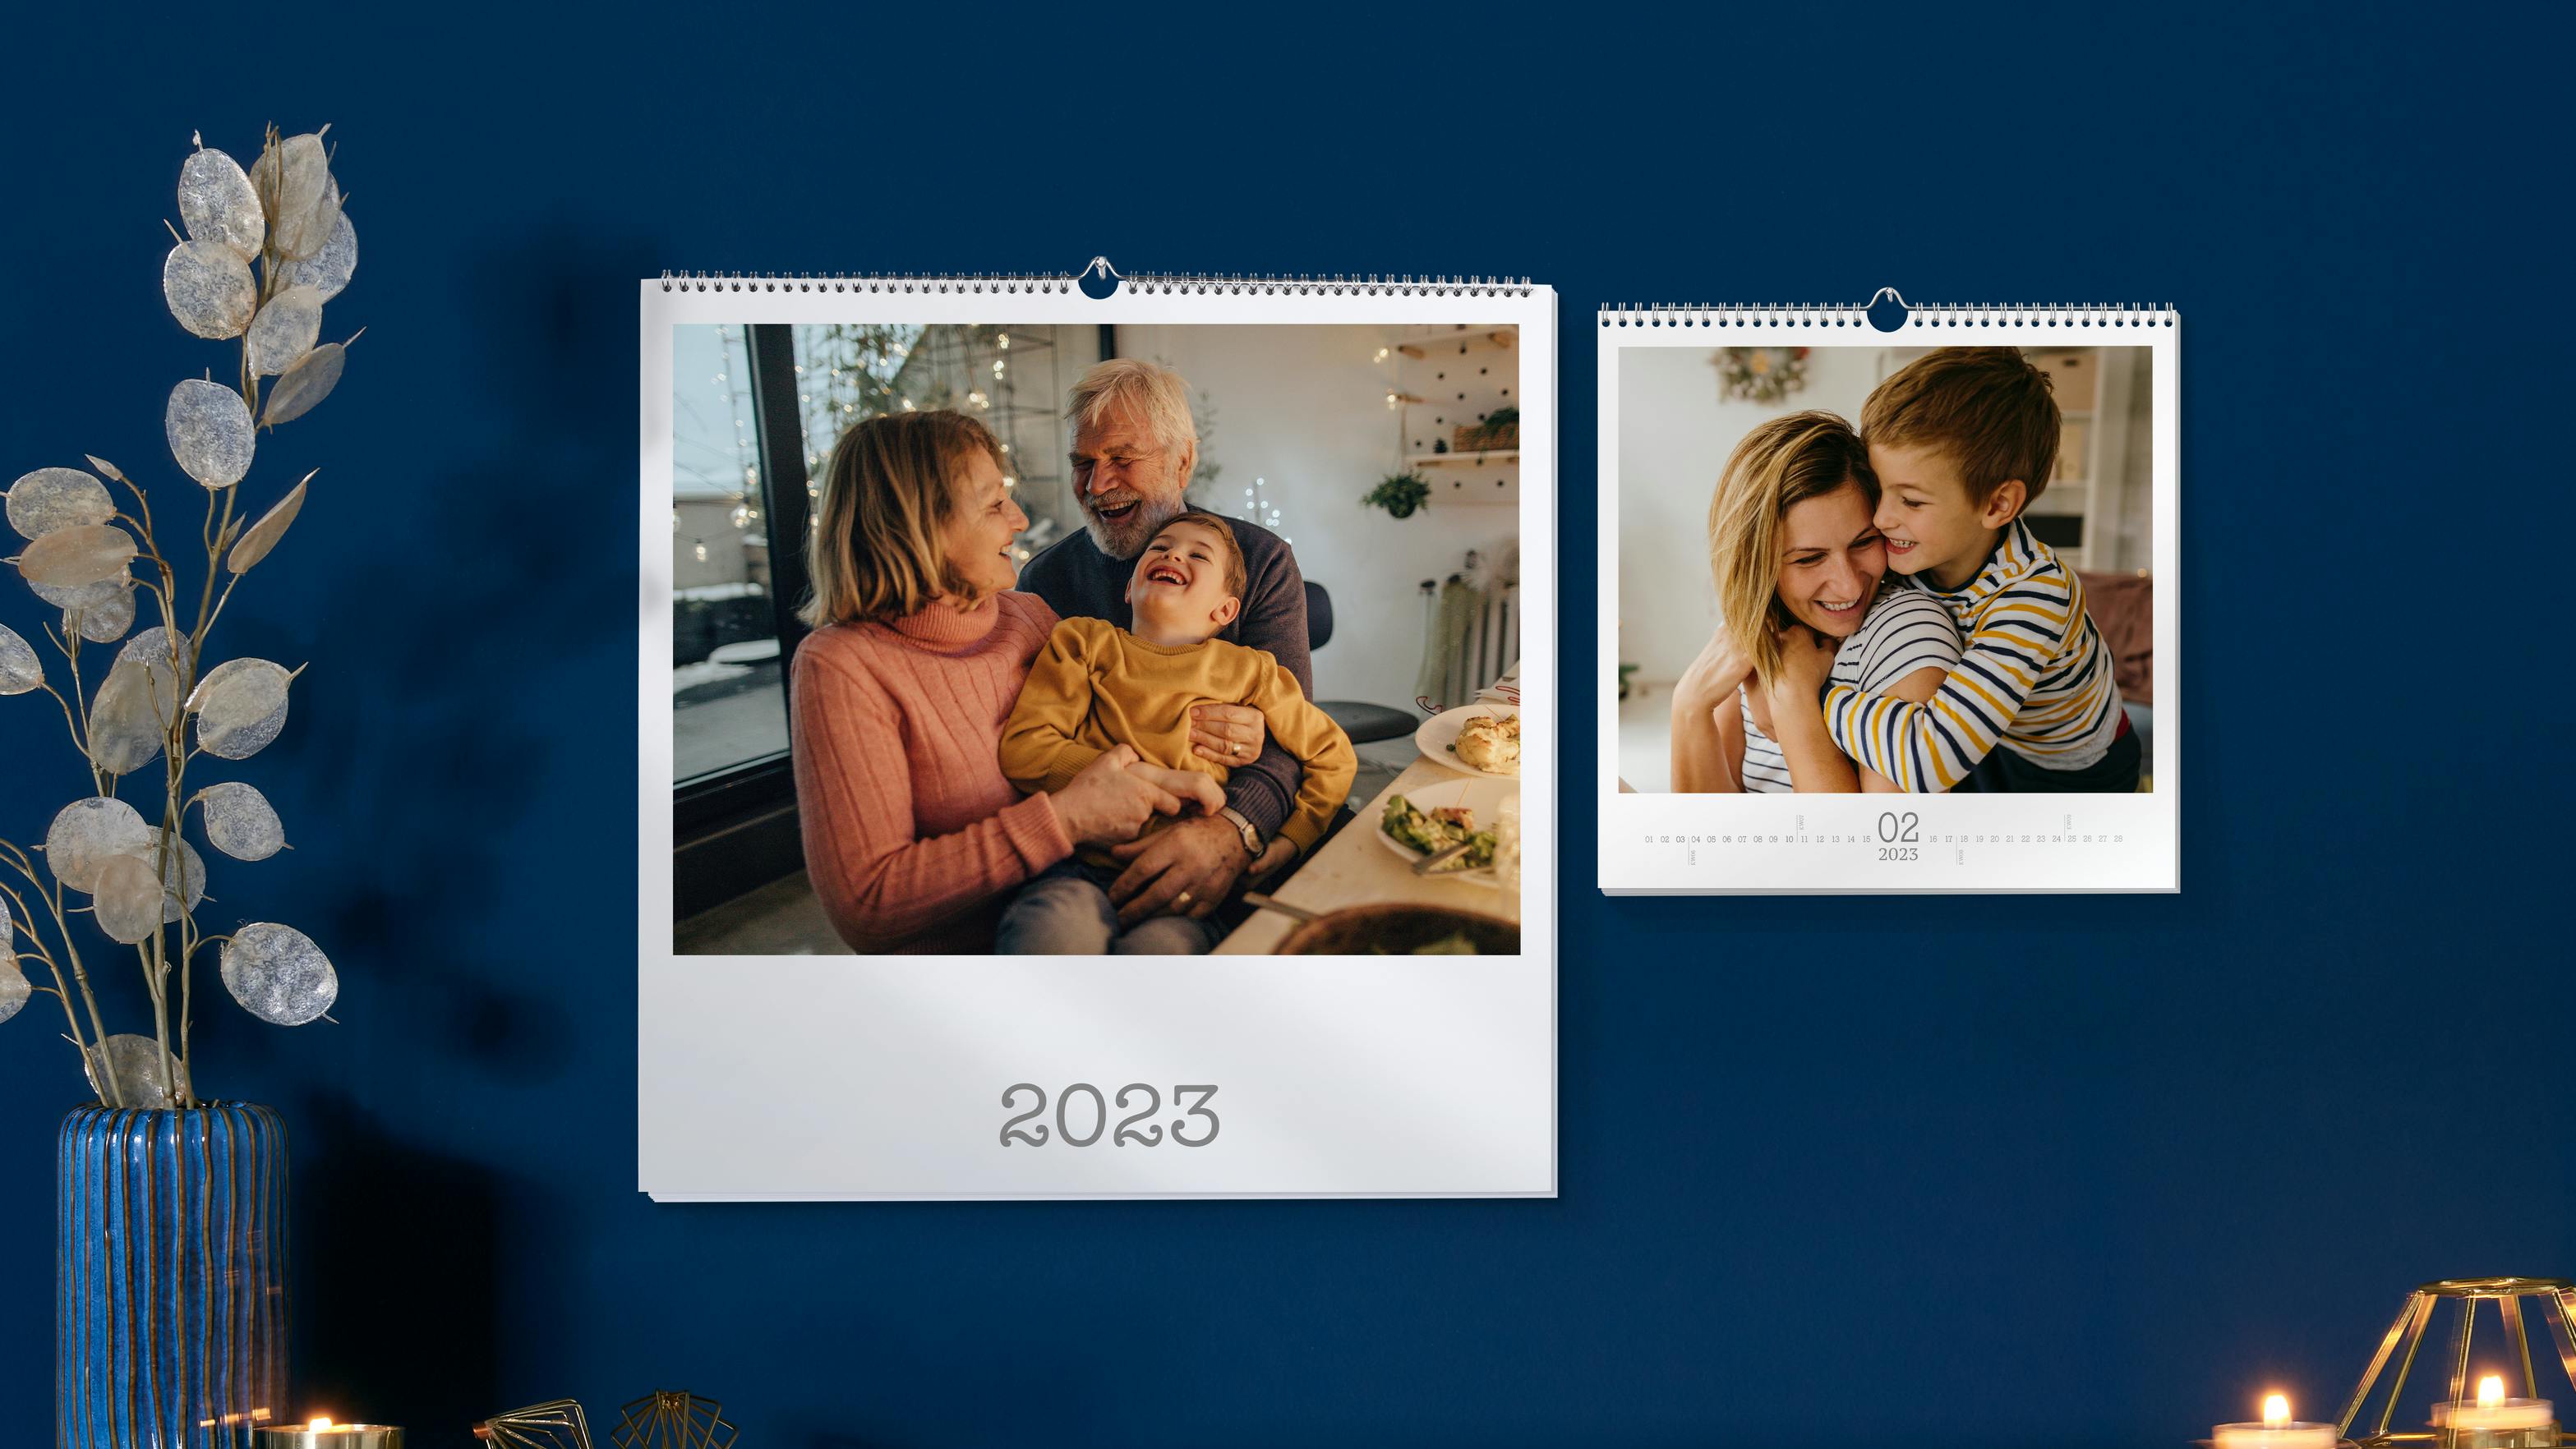 Calendarios personalizados con fotos 2023 con fotos familiares